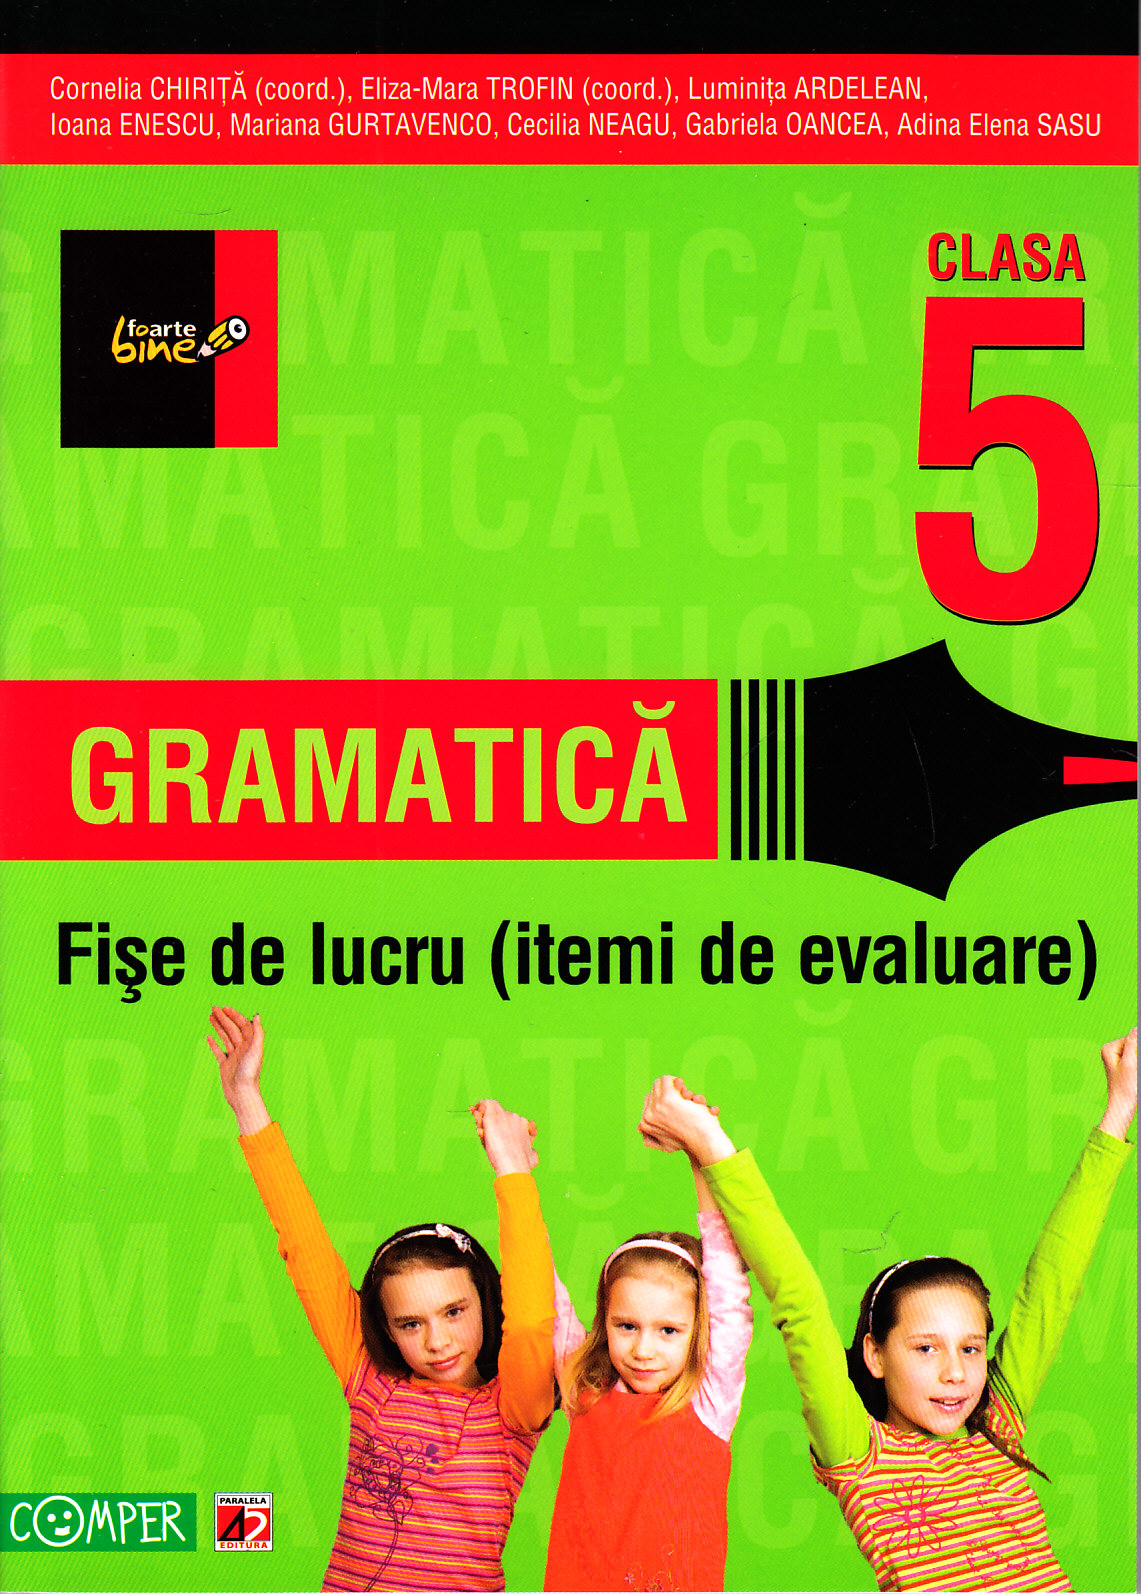 2012 Gramatica fise de lucru clasa 5 - Cornelia Chirita, Eliza-Mara Trofin